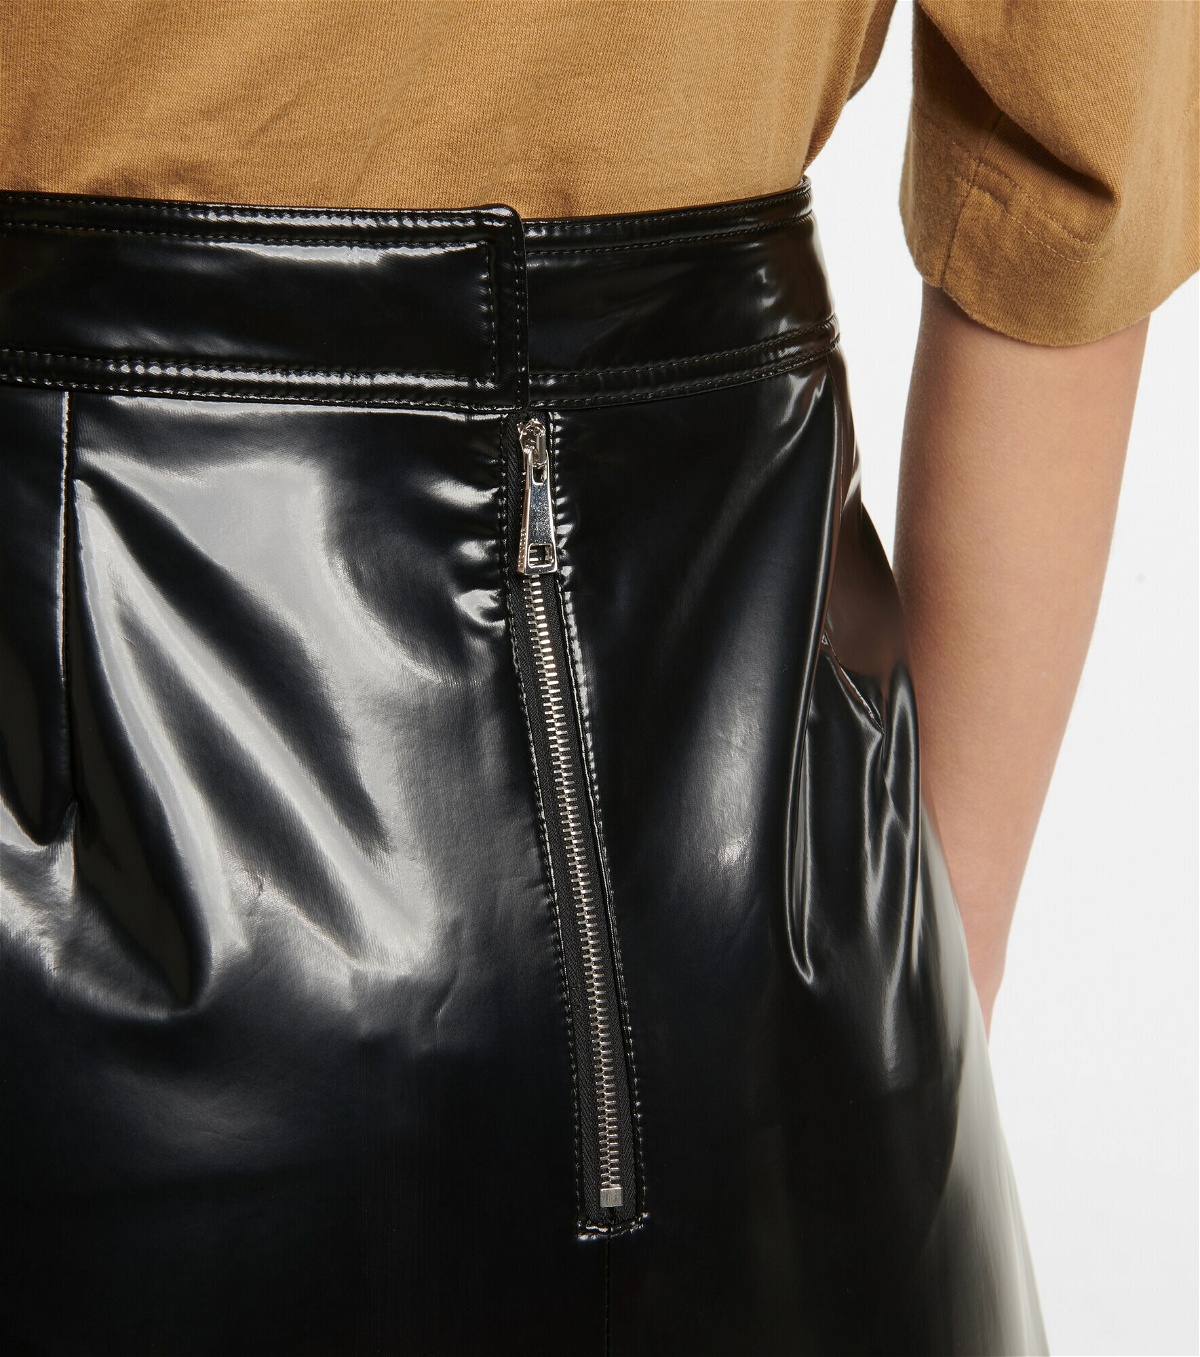 Moncler Genius - 2 Moncler 1952 faux leather midi skirt Moncler Genius